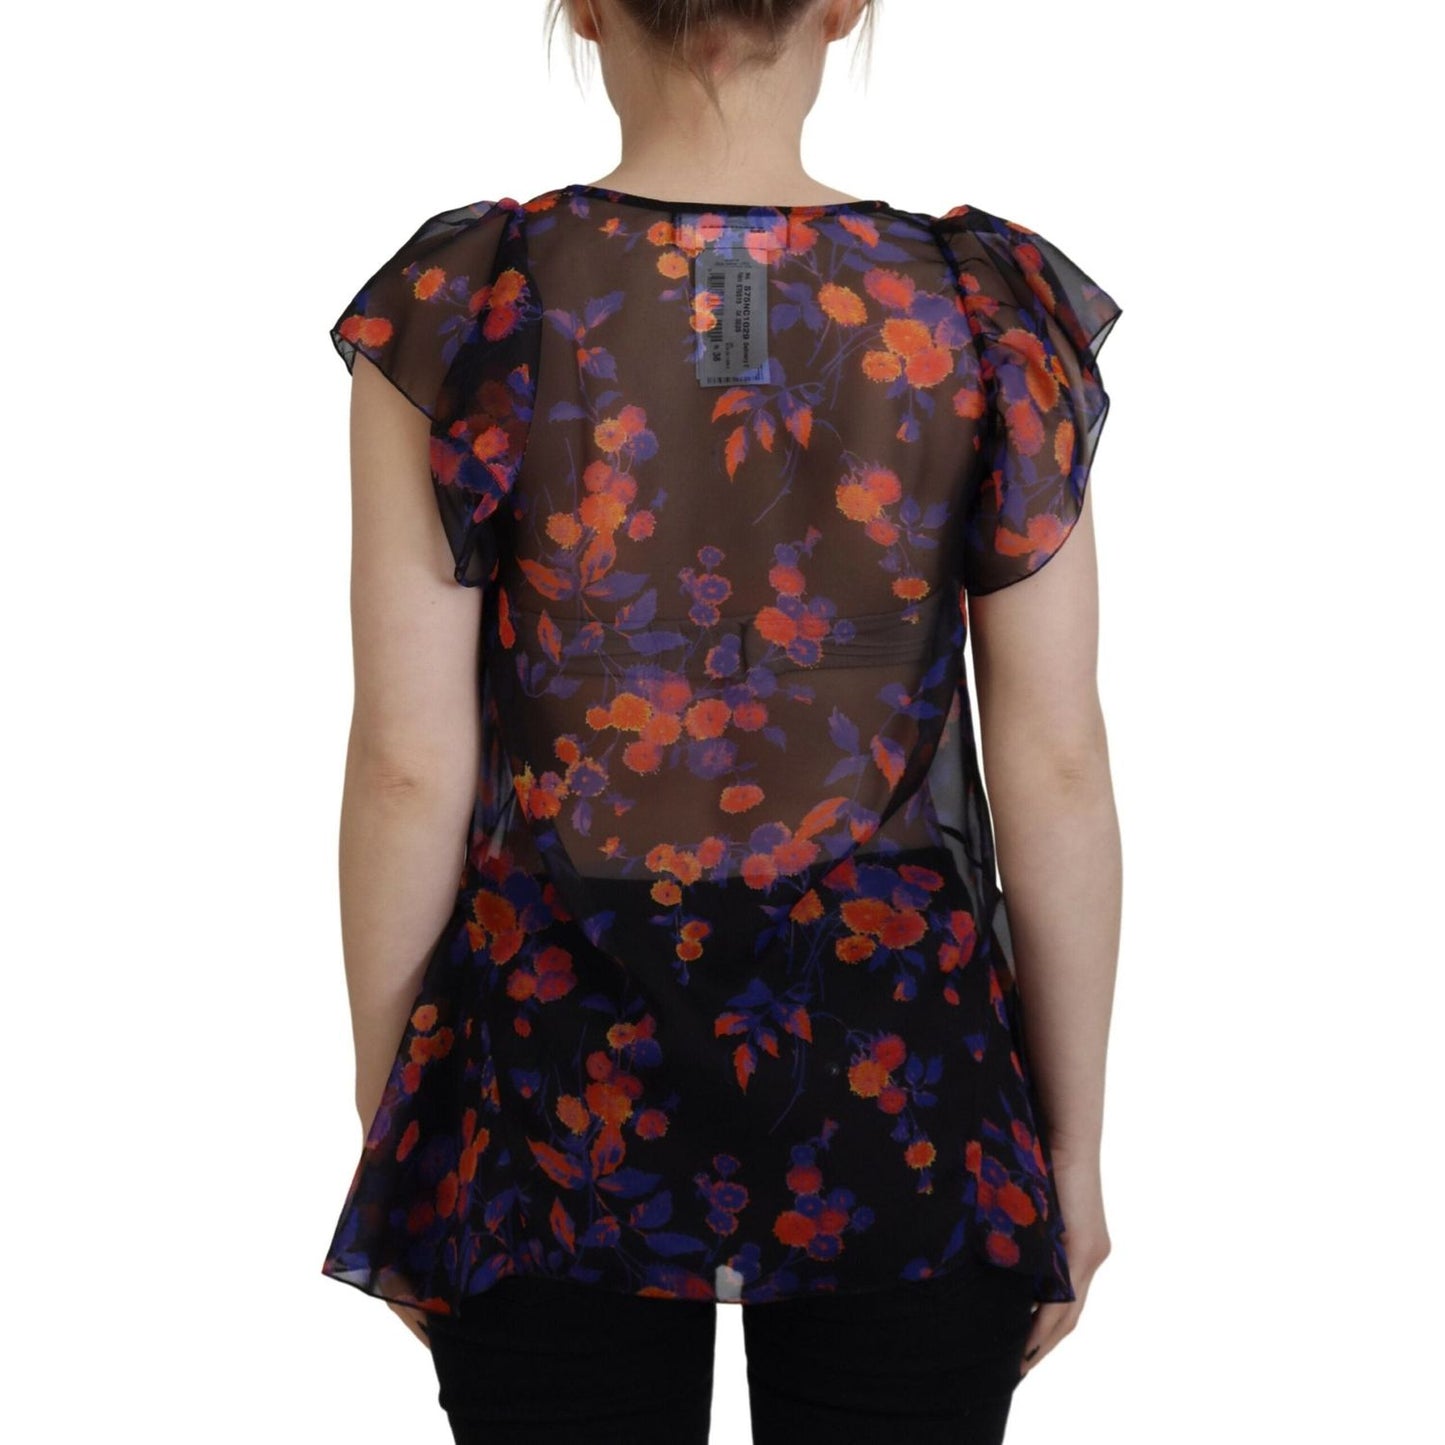 Dsquared² Black Floral Print Short Sleeves V-neck Blouse Top black-floral-print-short-sleeves-v-neck-blouse-top